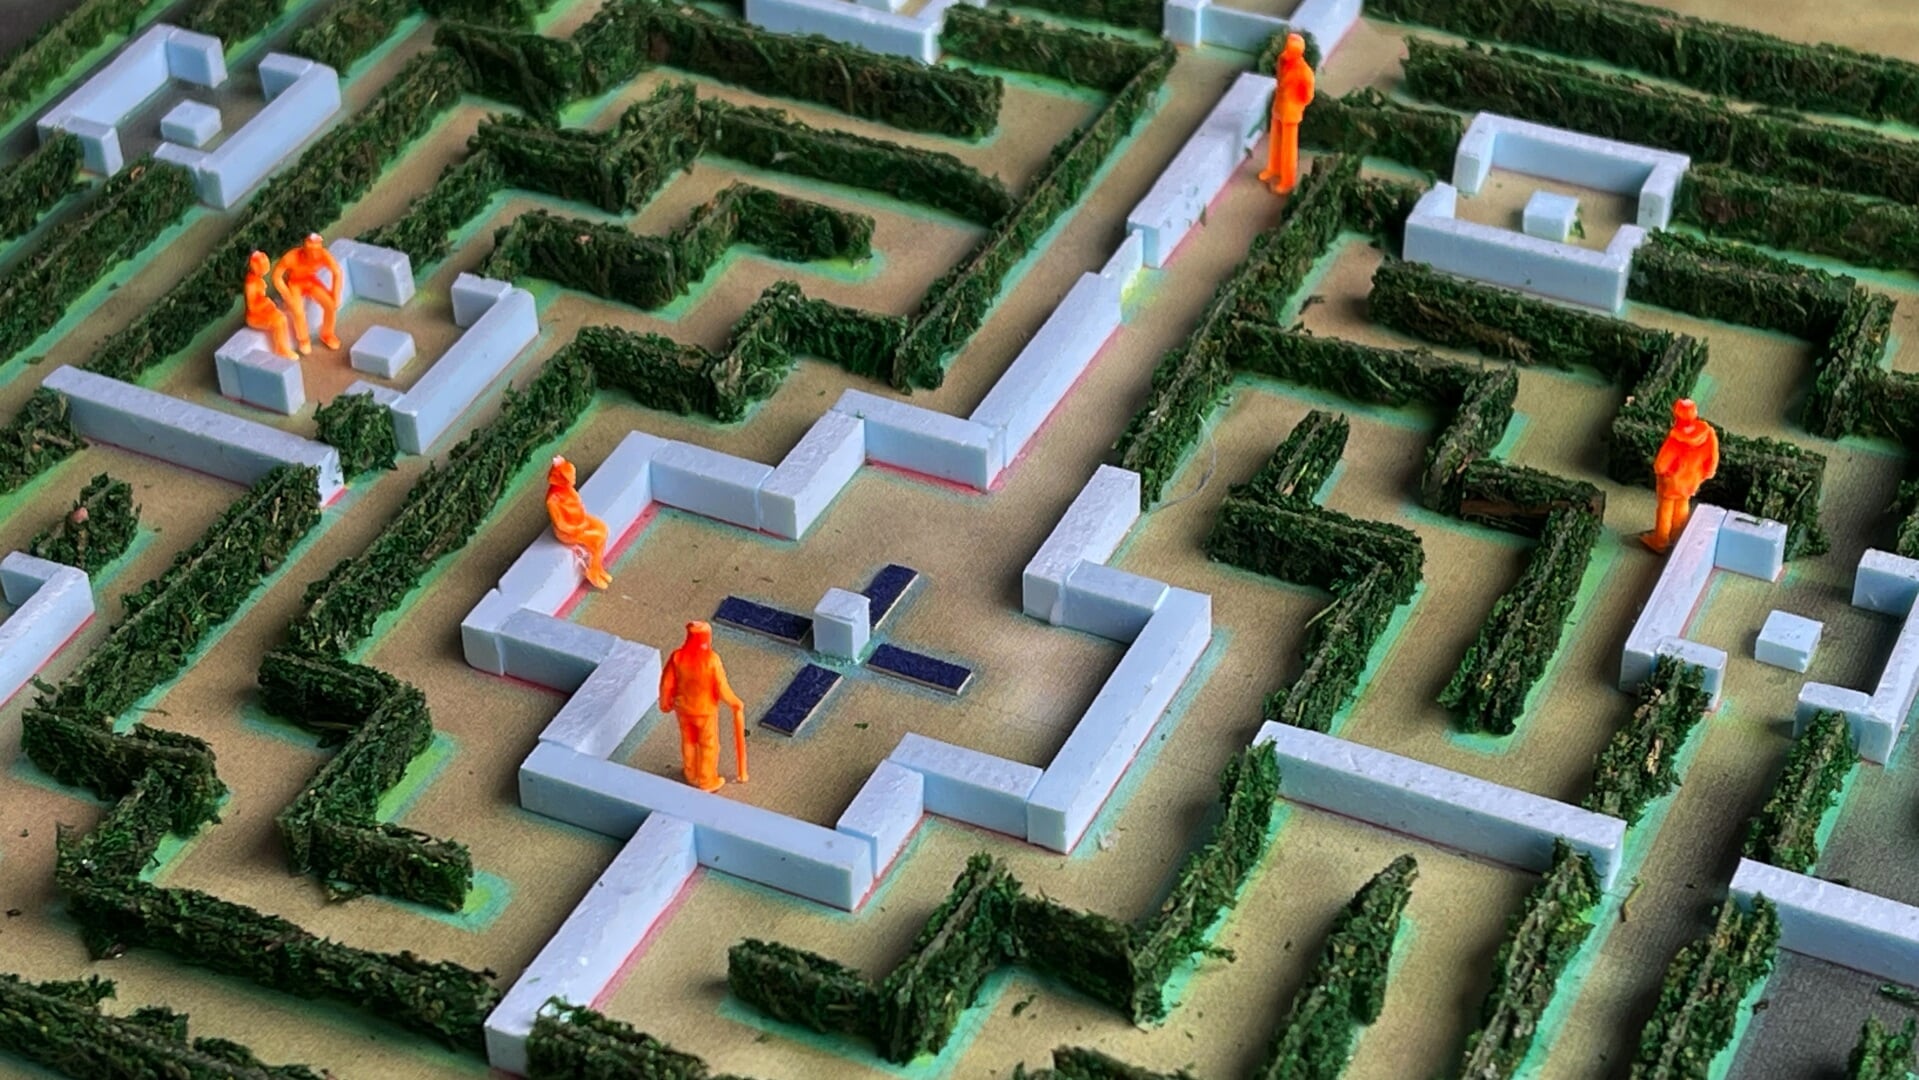 De maquette van hoe het labyrint in de Kloostertuin er ongeveer uit komt te zien.